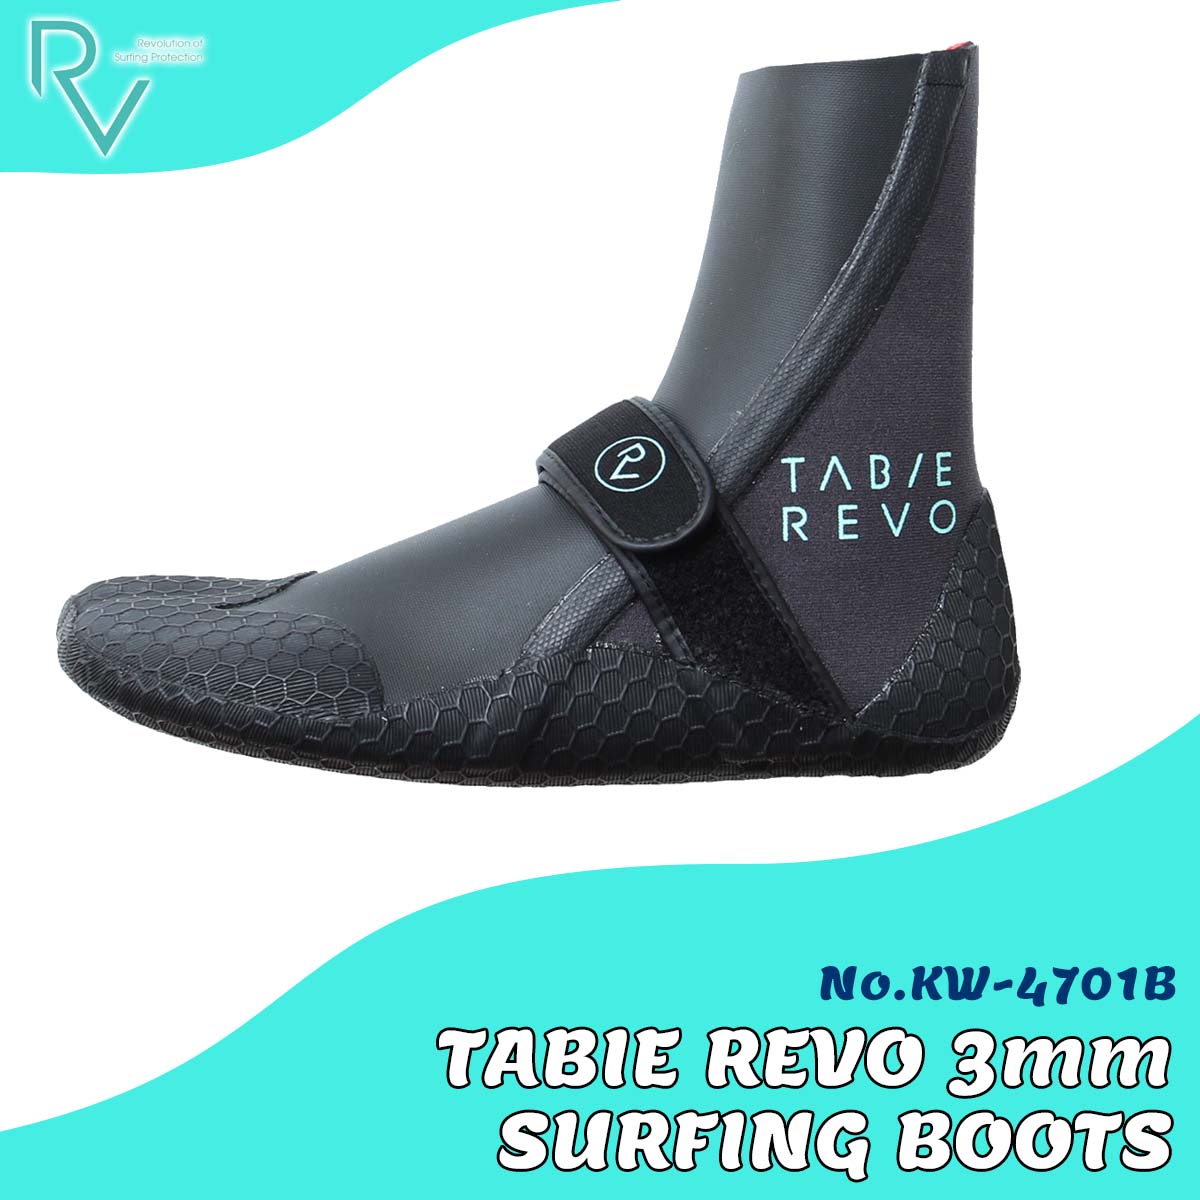 サーフブーツ 23/24 TABIE REVO タビ―レボ 3mm SURFING BOOTS 